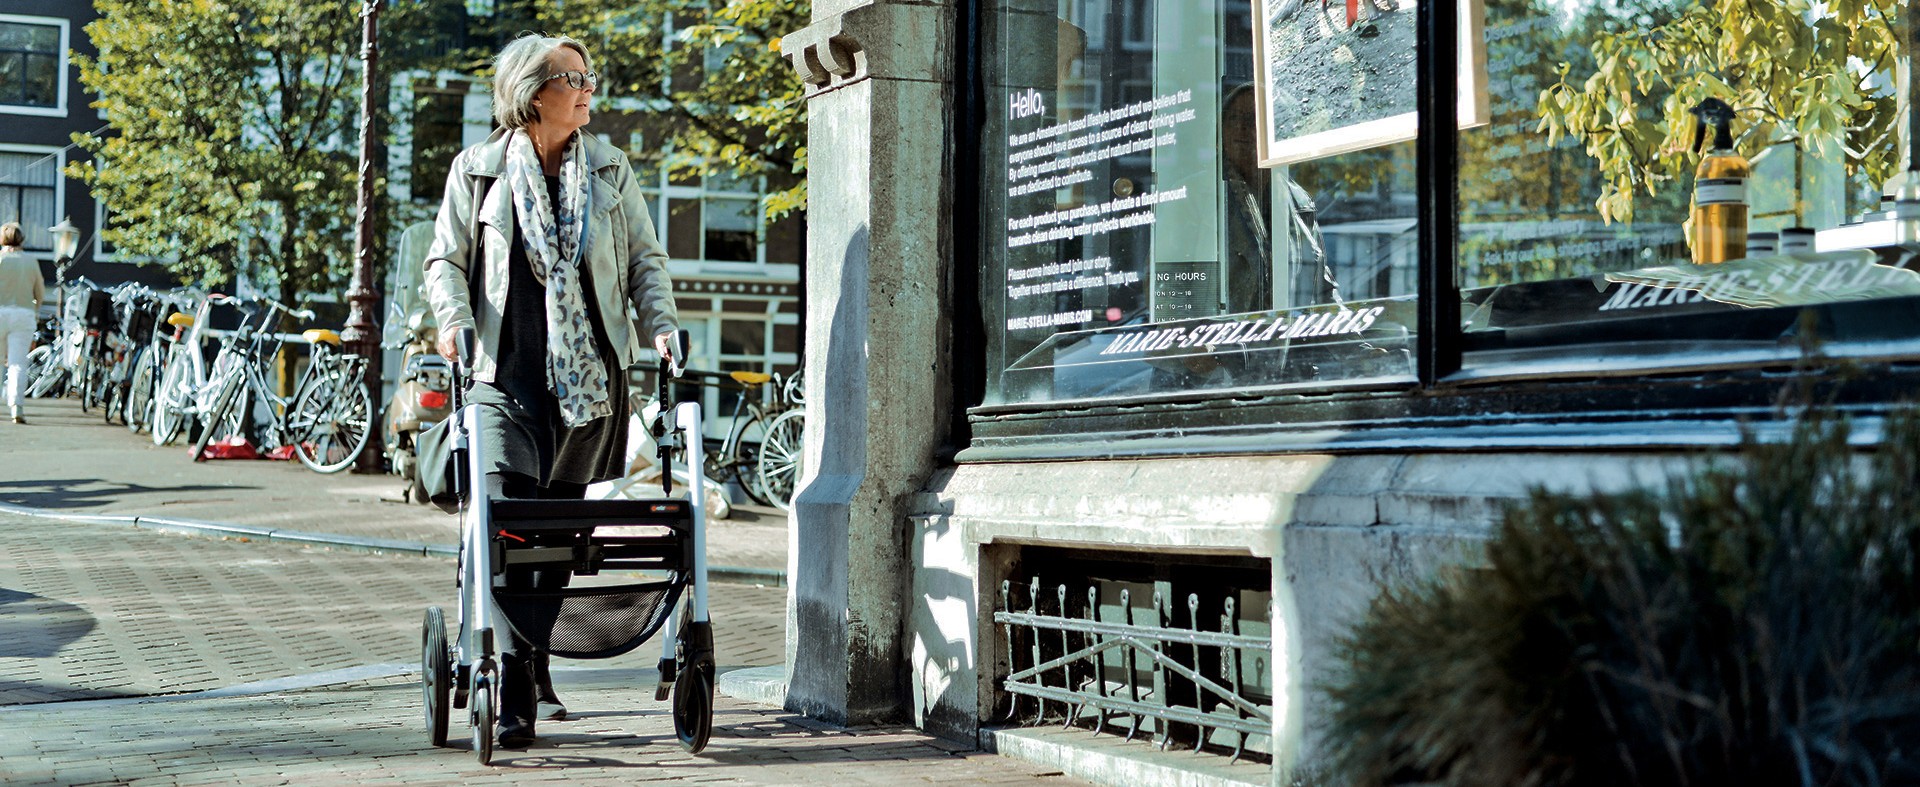 Dame loopt met een rollator in Amsterdam en kijkt naar een etalage.